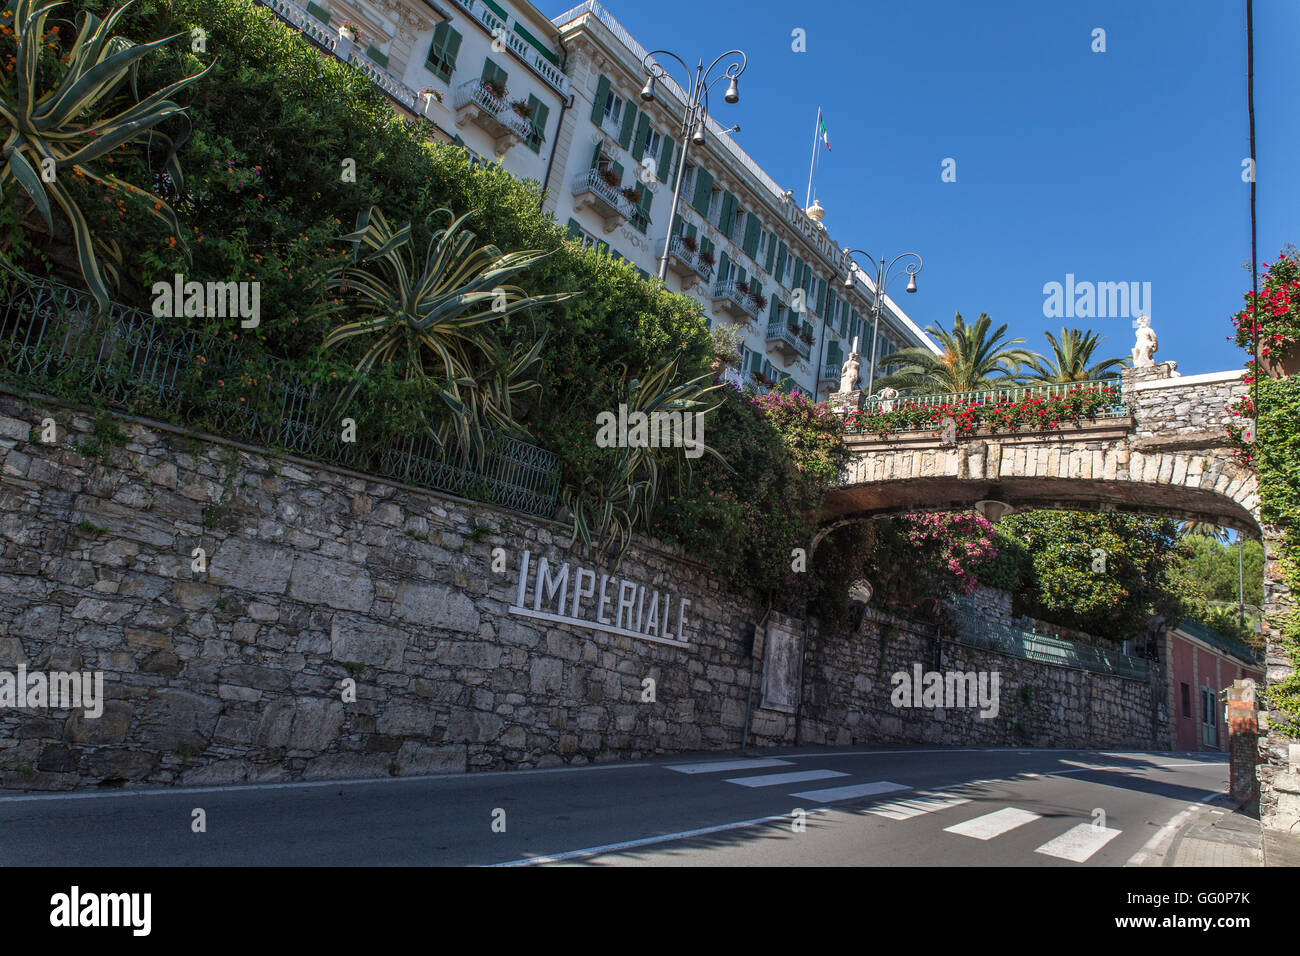 Imperiale Intercontinental hotel, Santa Margherita Ligure, Rapallo, Portofino, Levante, Liguria, Cinque Terre, Italy, Europa, EU Stock Photo